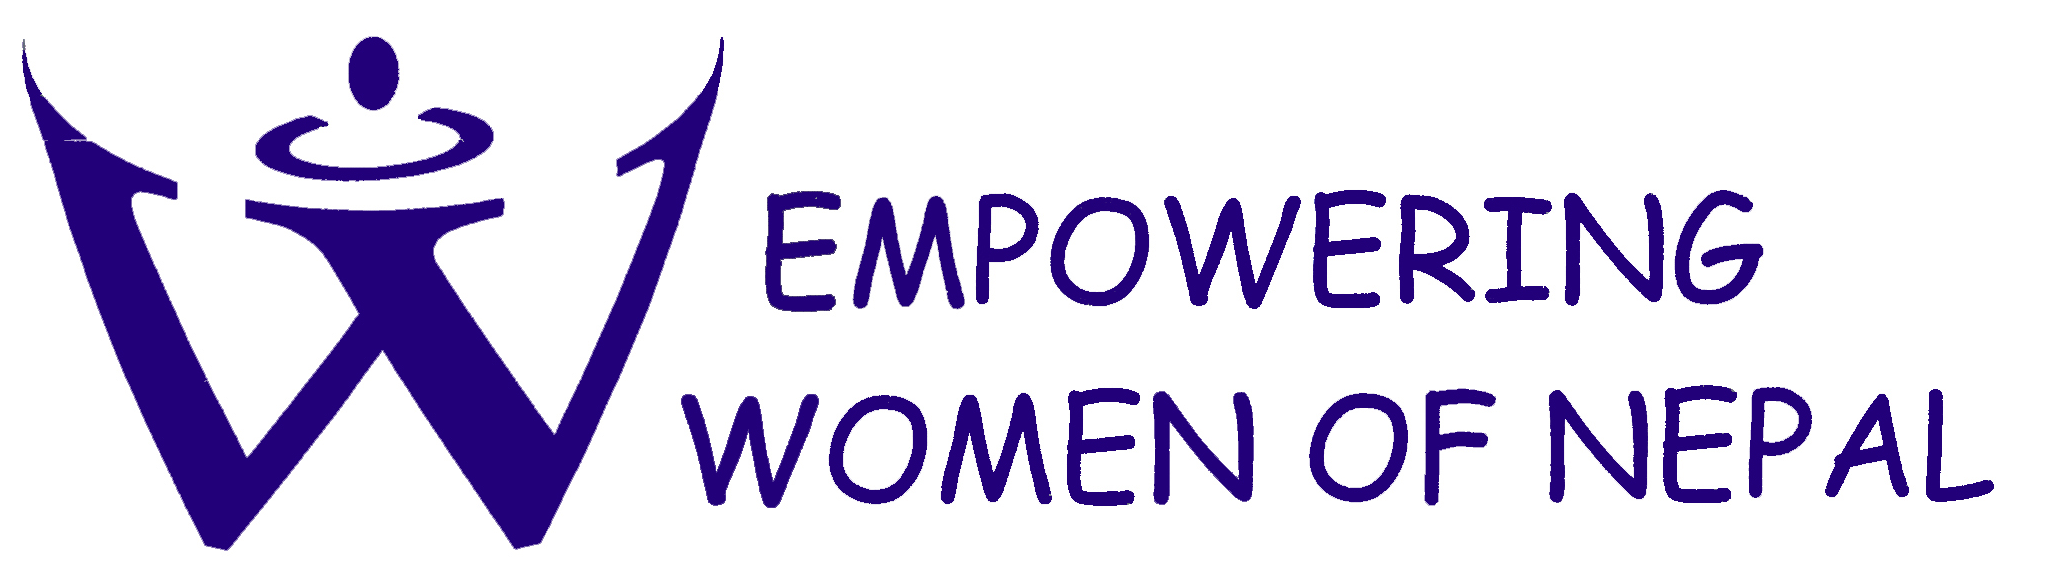 Empowering Women of Nepal